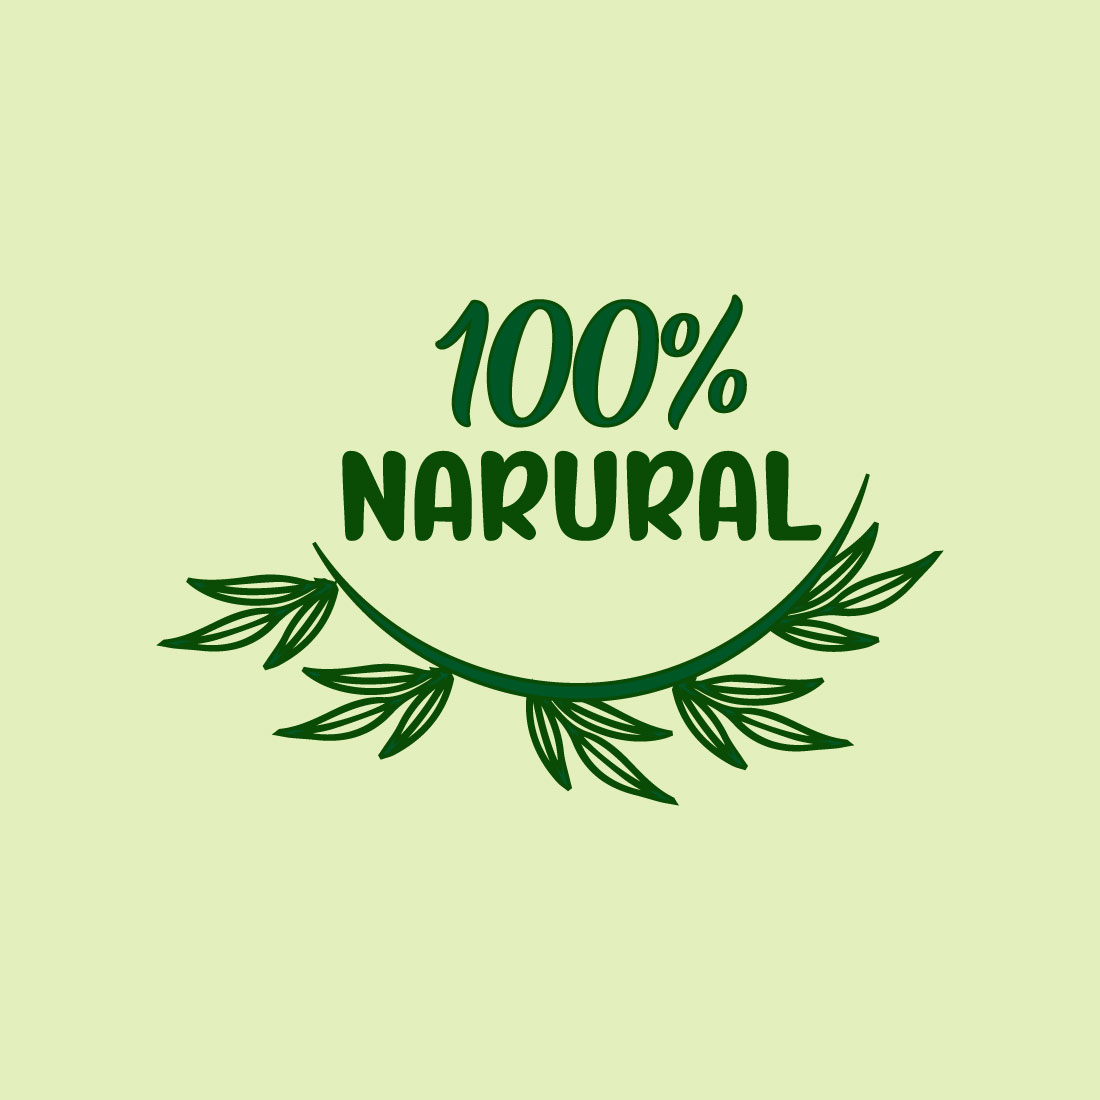 Free GreenNatural Logo cover image.